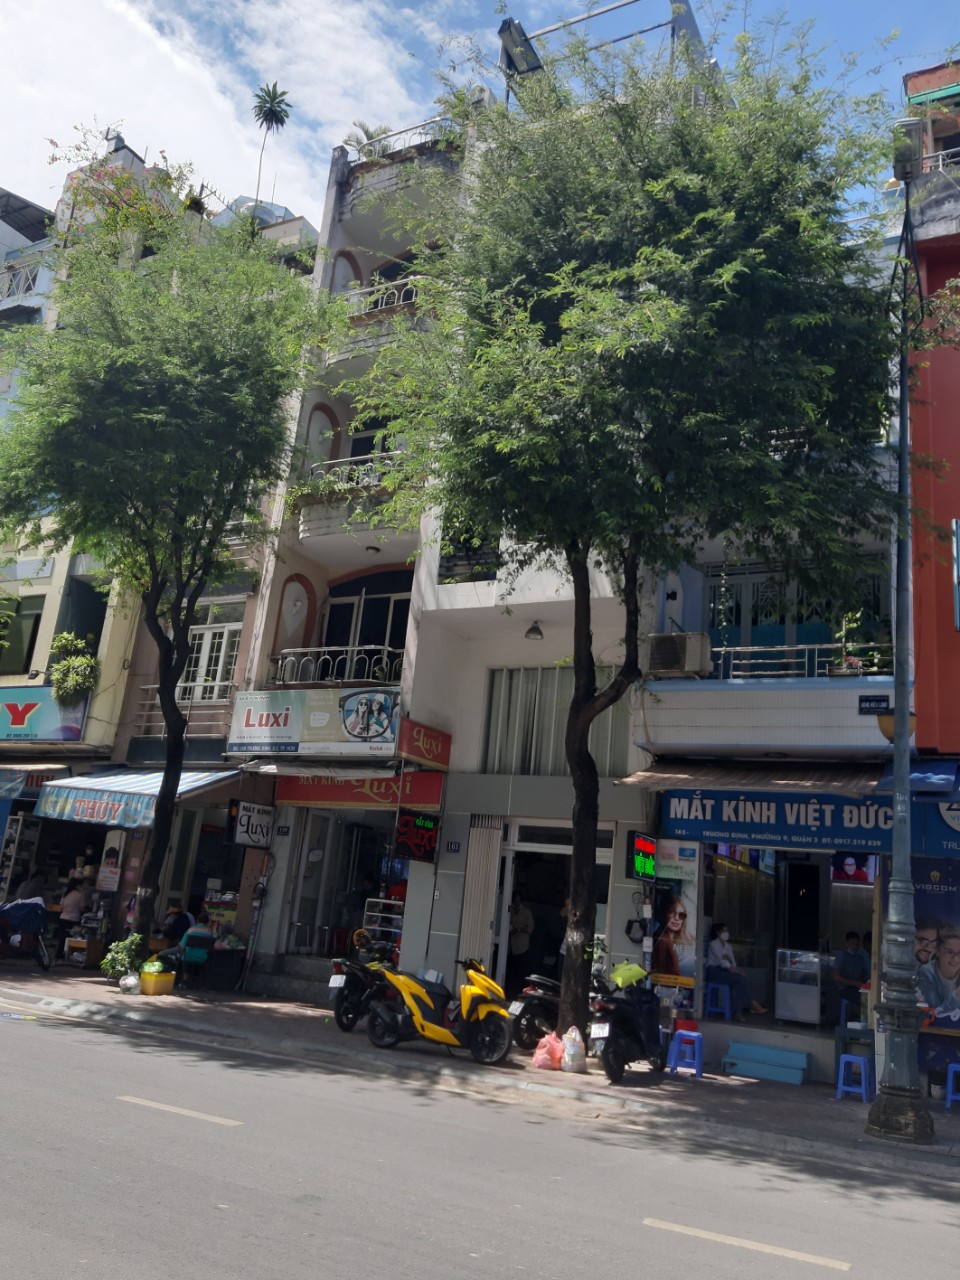 Bán nhà mặt tiền đường Võ Văn Tần, DT 4x17.3, 3 tầng, giá 40,5 tỷ